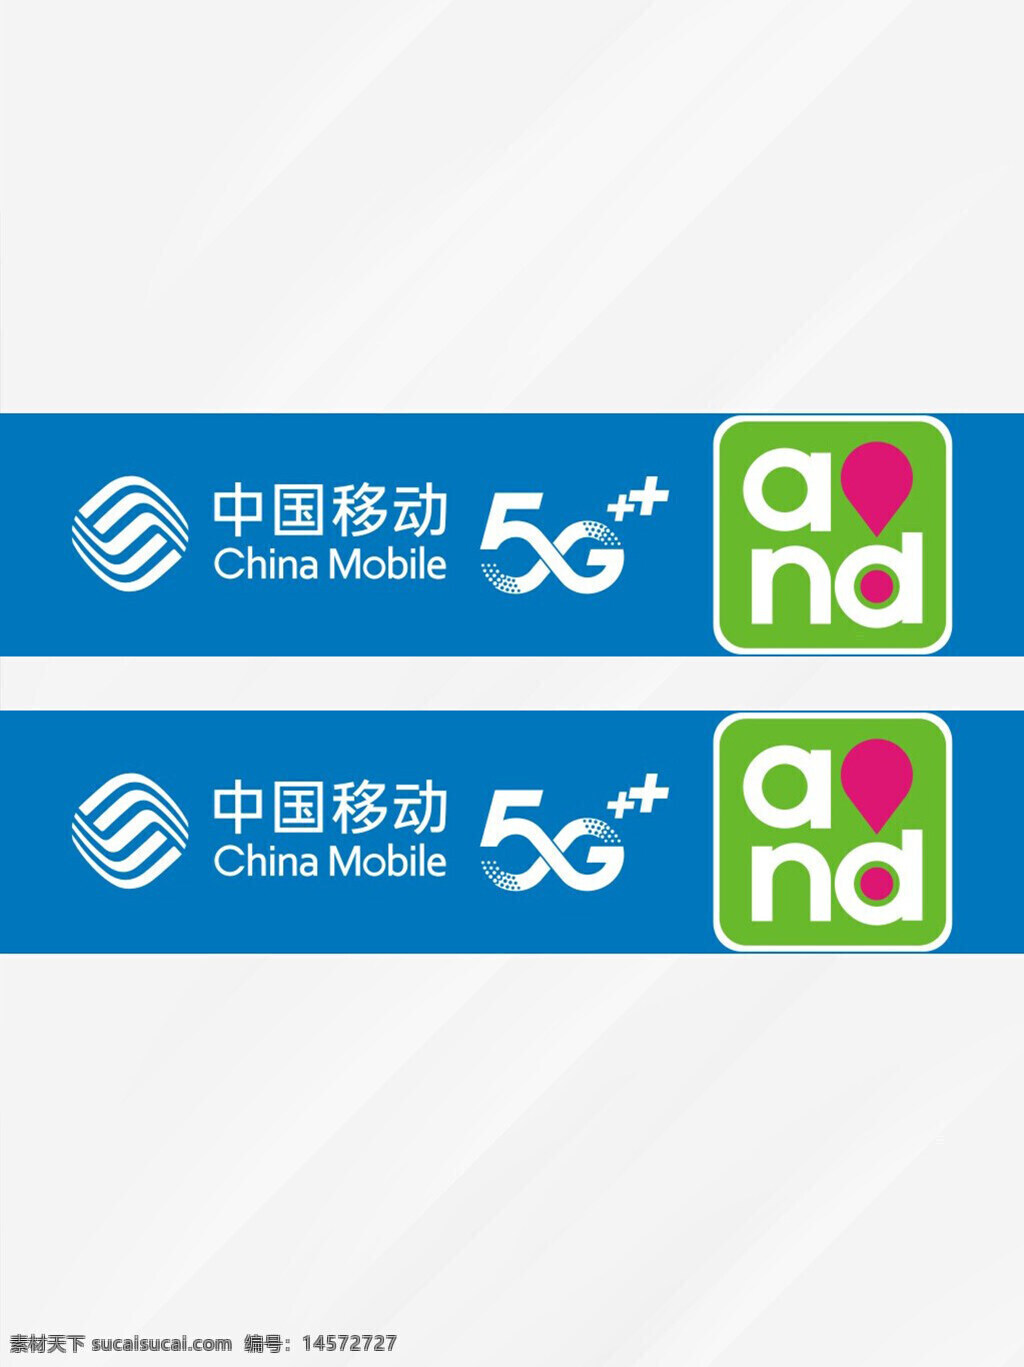 中国移动 5g时代 5g 中国移动logo 中国移动标识 移动店招 中国移动店招 招牌 设计 广告设计 cdr